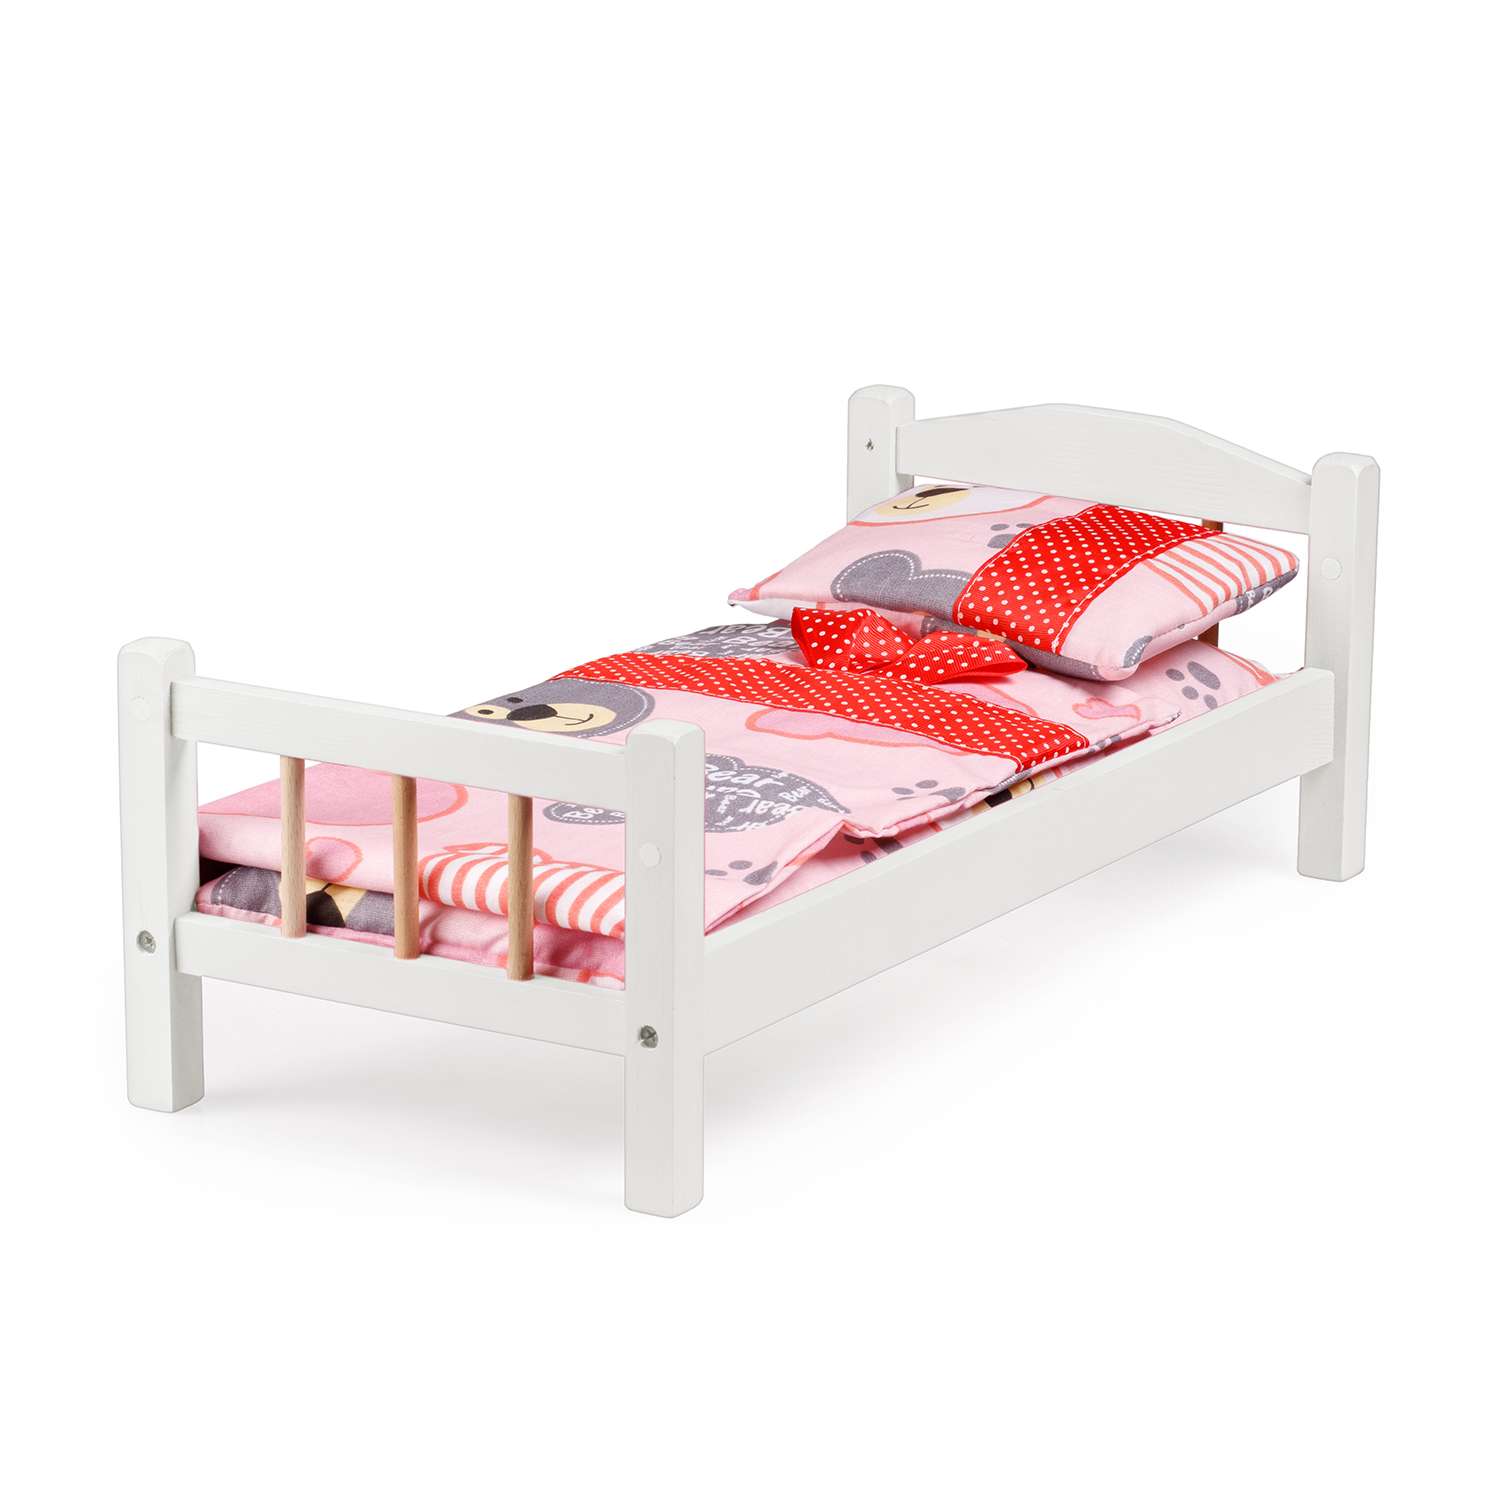 Кроватка для кукол Тутси с двумя спинками белая деревянная 1-298-2021 - фото 1